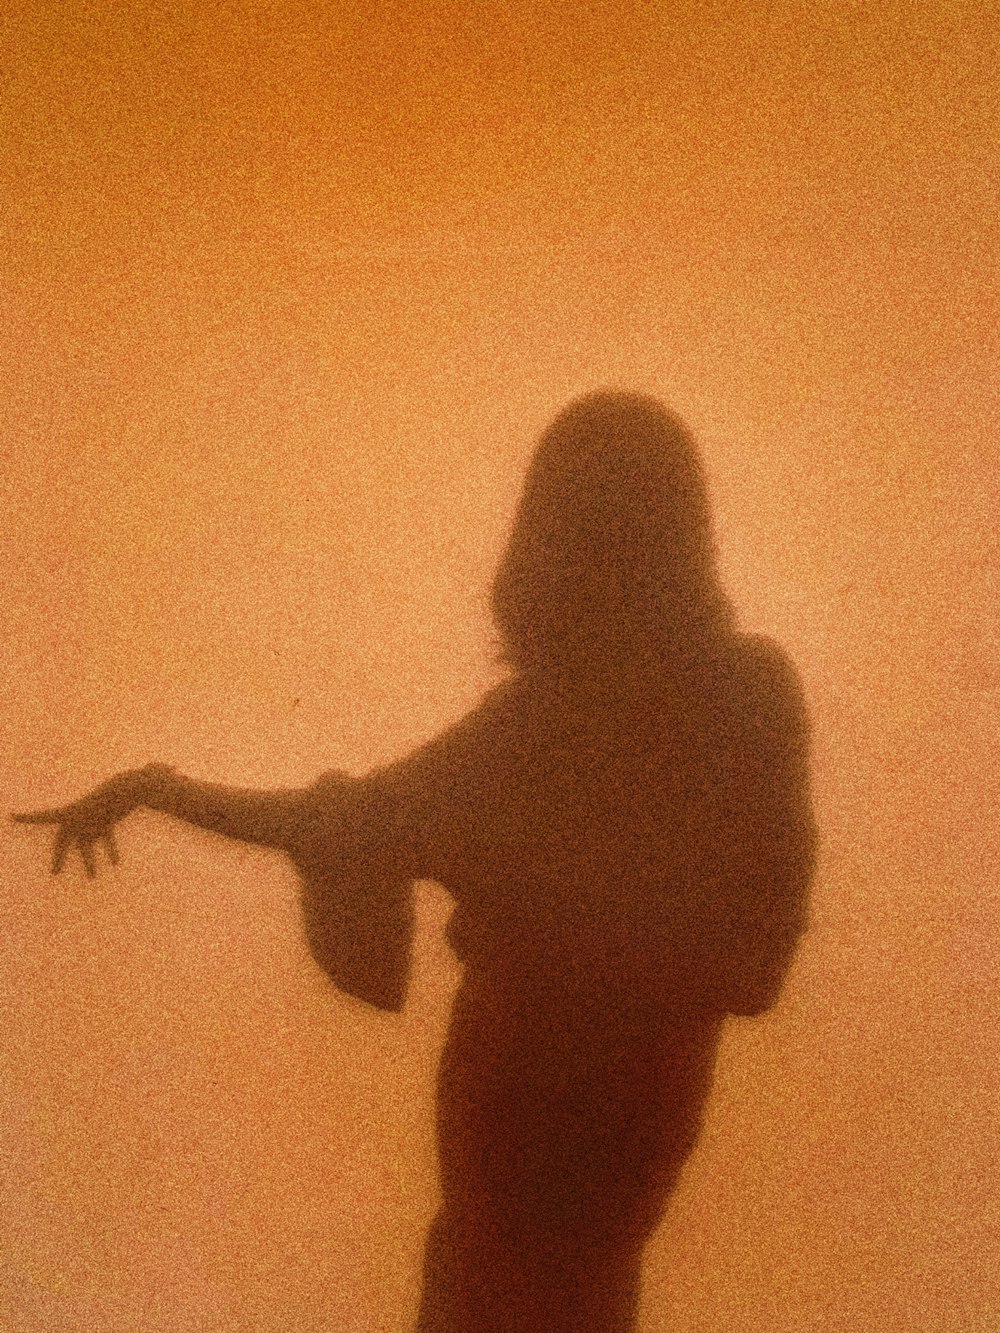 silhouette de femme debout et levant sa main droite